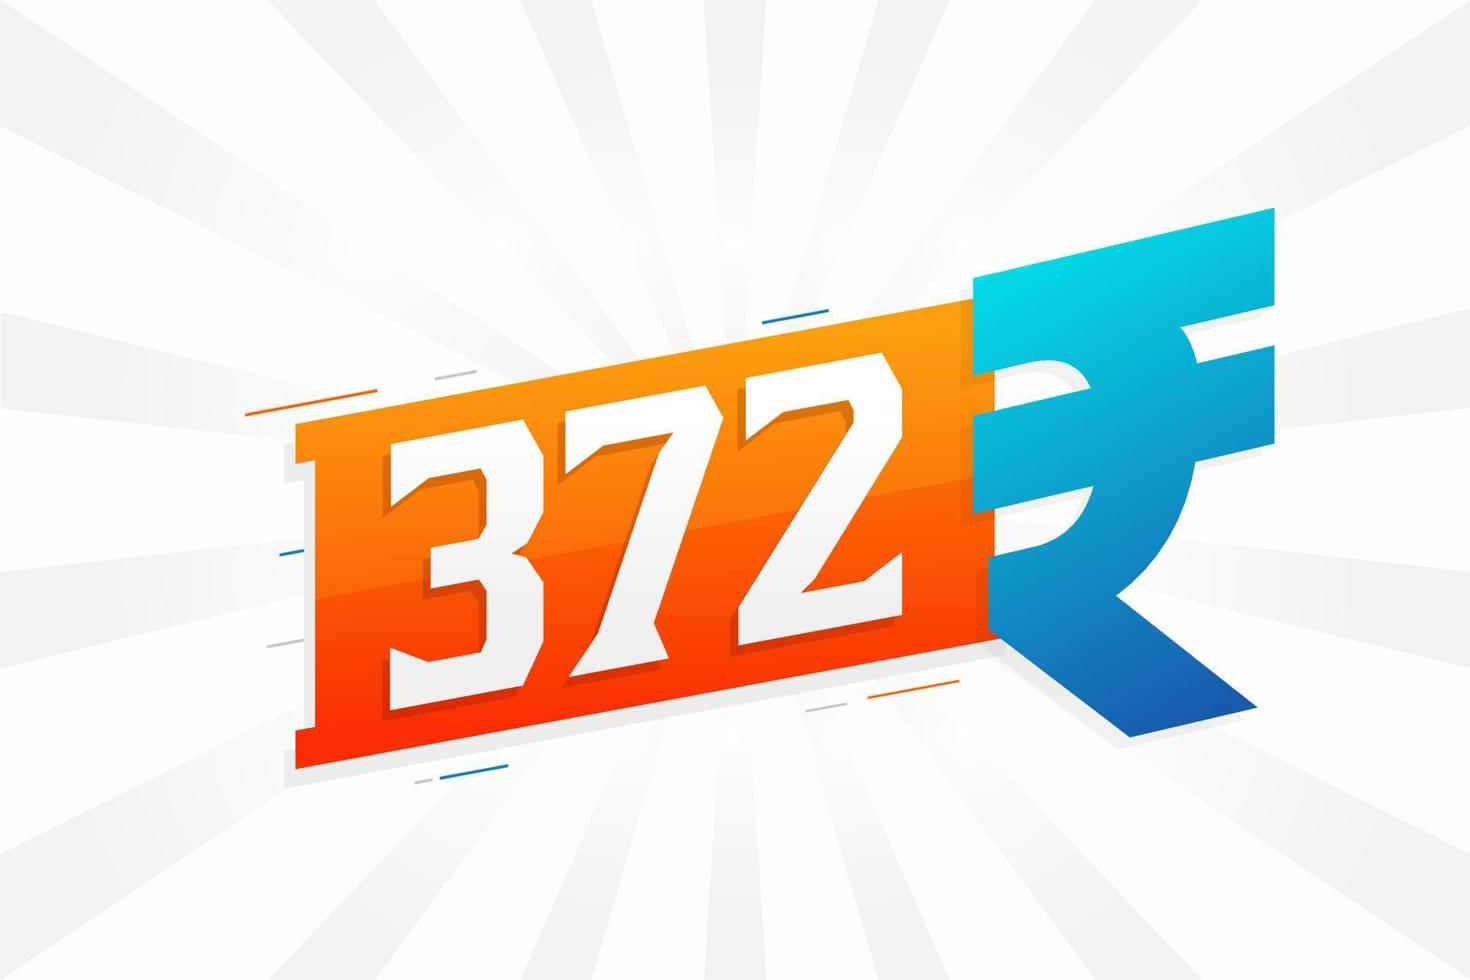 Imagen de vector de texto en negrita de símbolo de 372 rupias. 372 rupia india signo de moneda ilustración vectorial